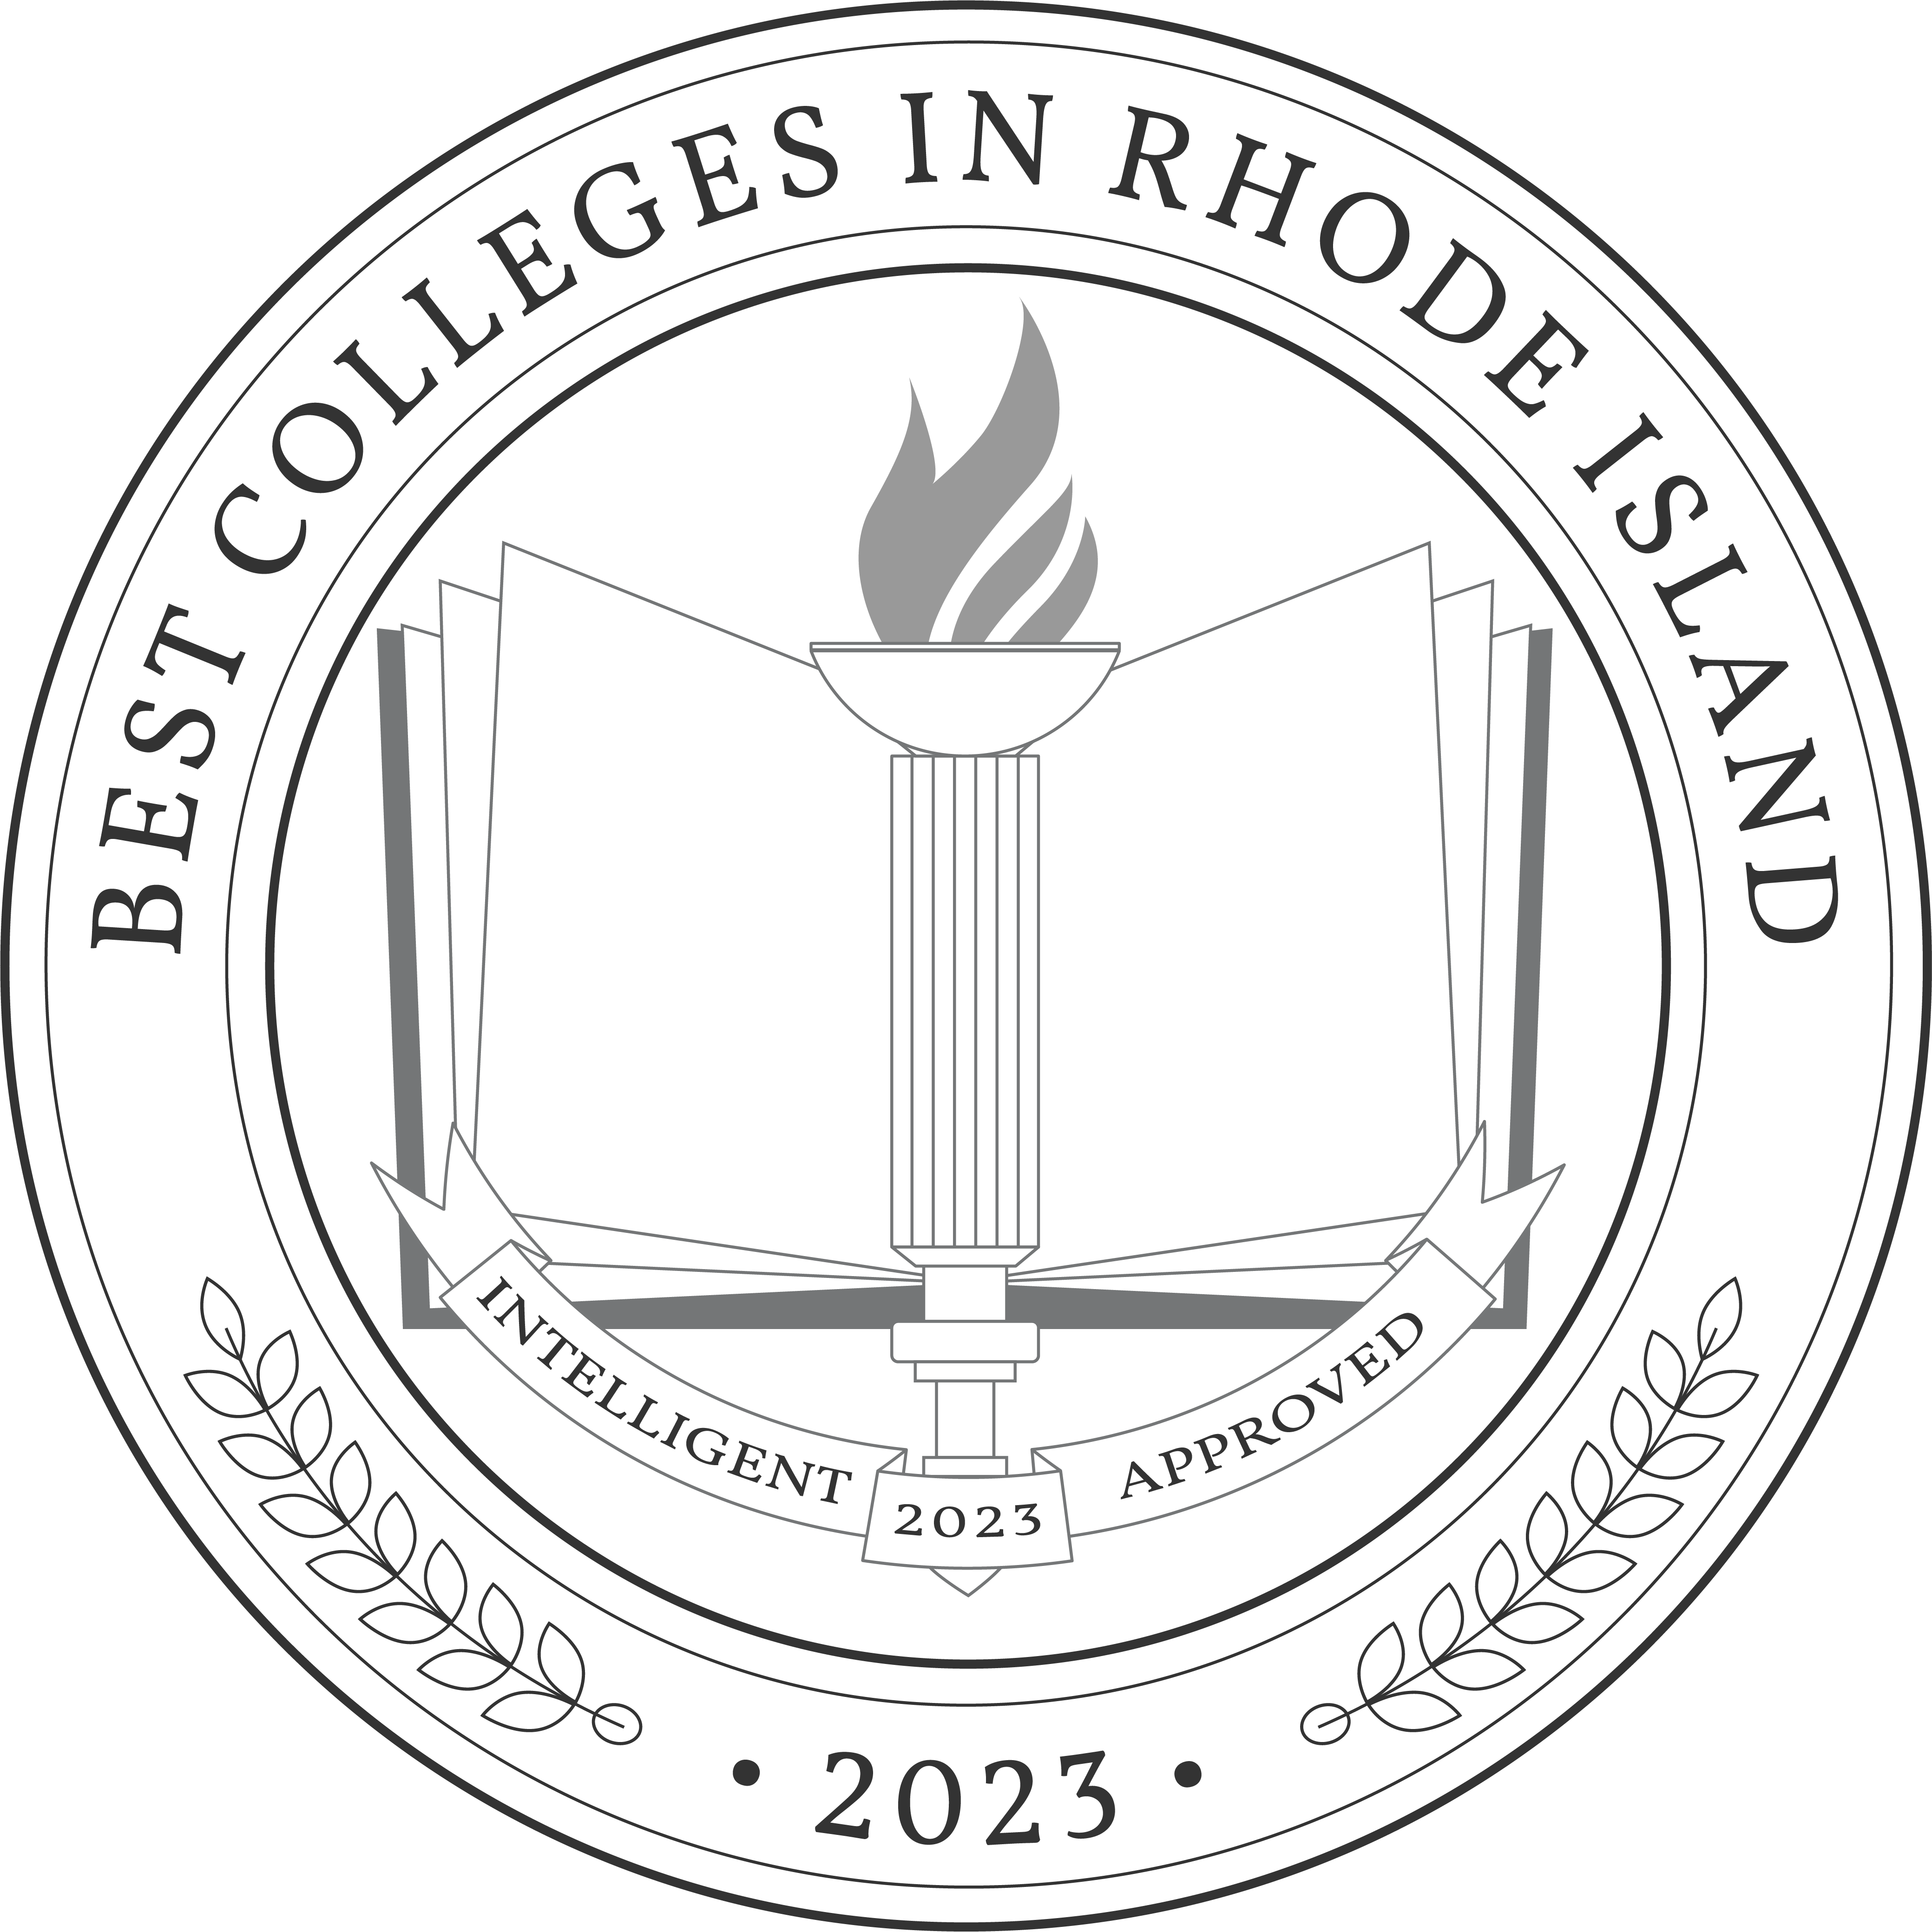 Best Colleges in Rhode Island 2023 Badge